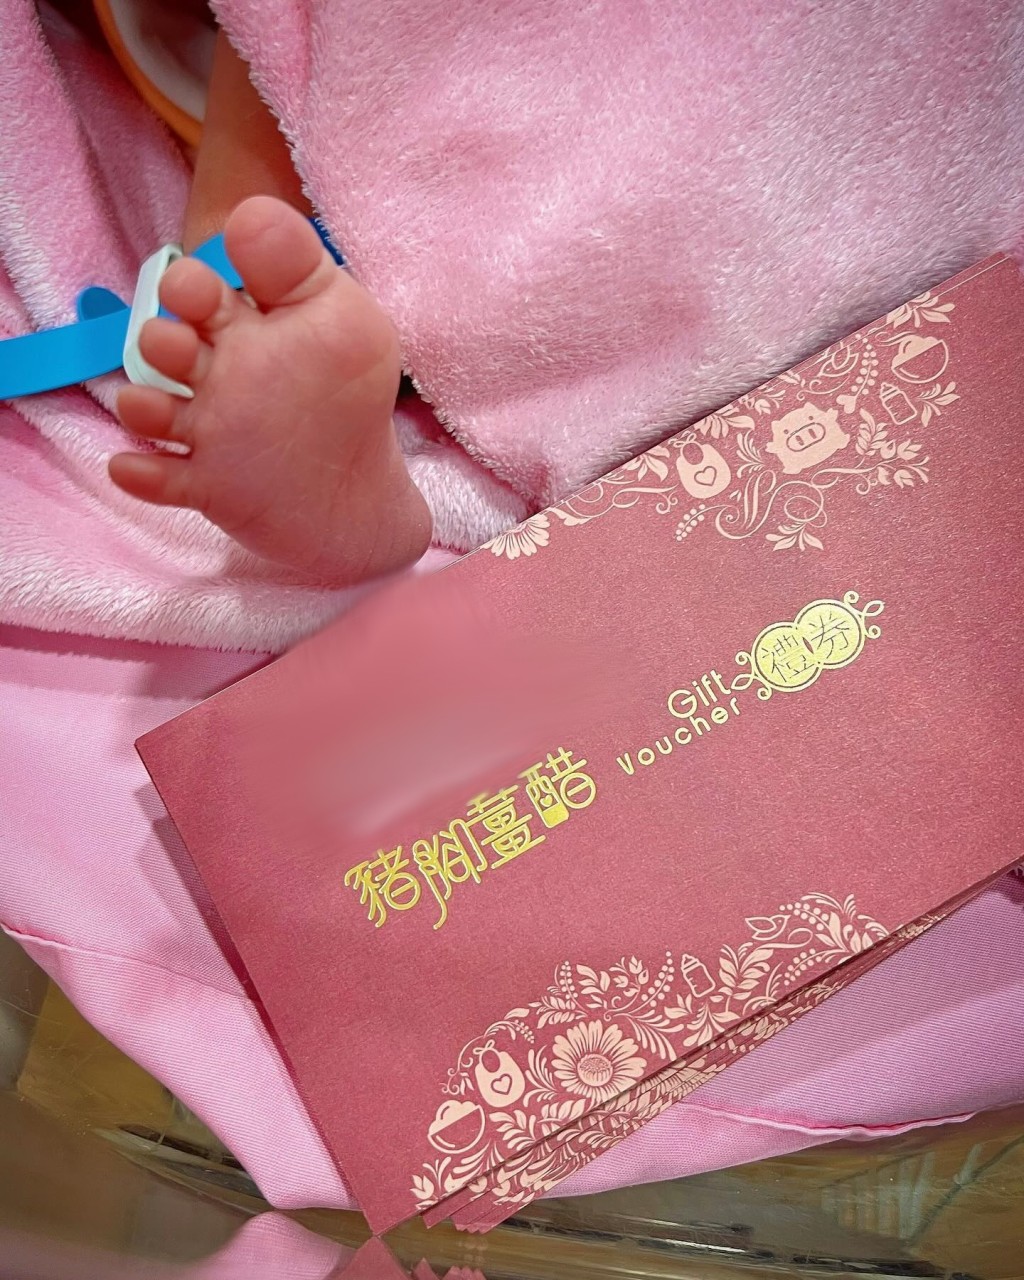 袁伟豪透露12朝（产后第12天）已过，请大家食猪脚姜。